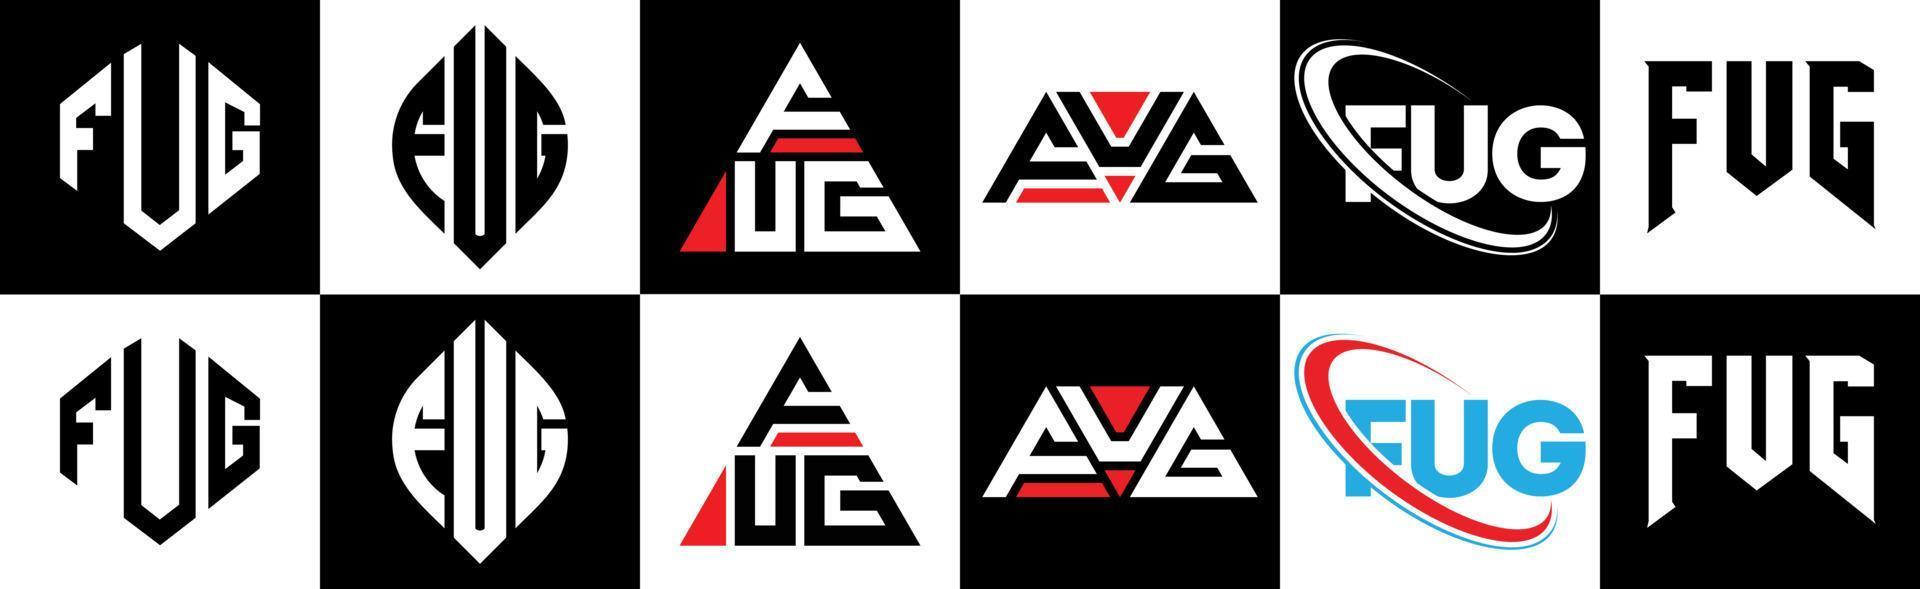 fug-brief-logo-design in sechs stilen. fug polygon, kreis, dreieck, hexagon, flacher und einfacher stil mit schwarz-weißem farbvariationsbuchstabenlogo in einer zeichenfläche. fug minimalistisches und klassisches logo vektor